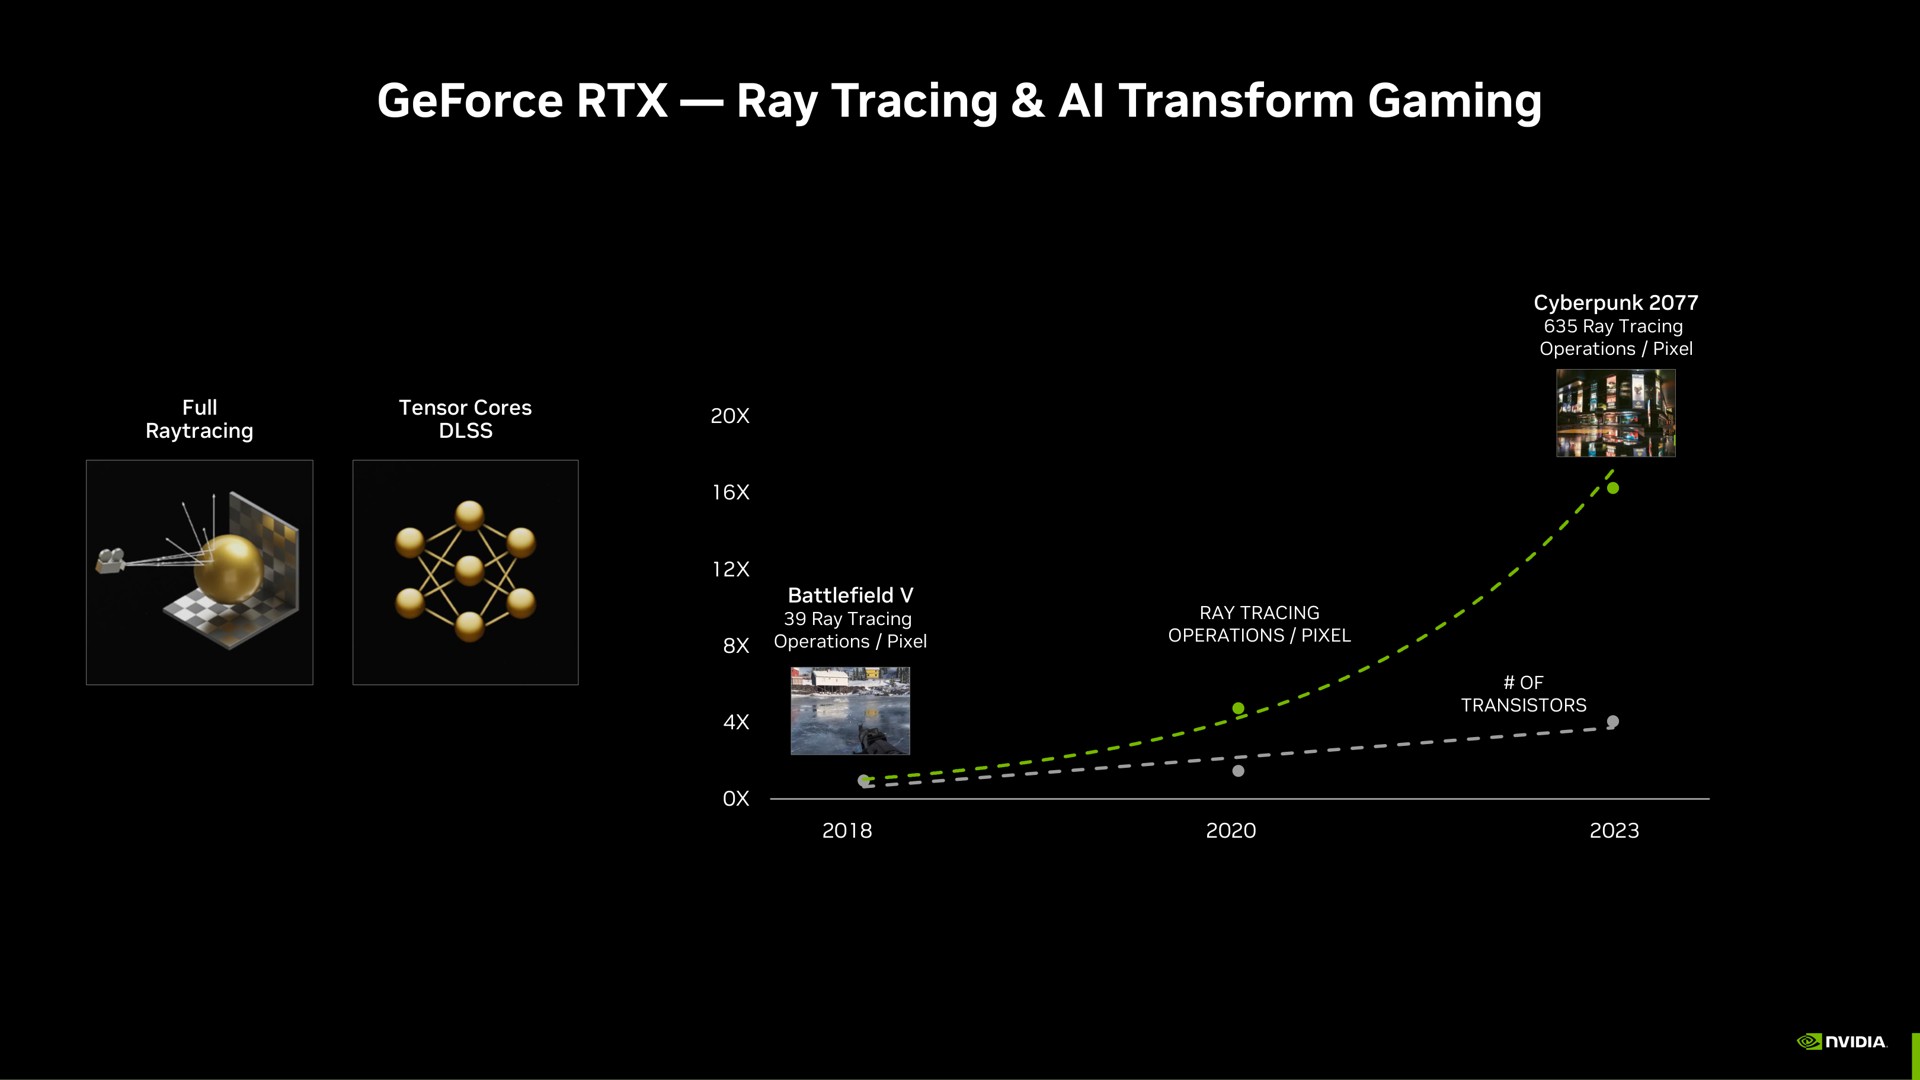 ray tracing transform gaming a | NVIDIA